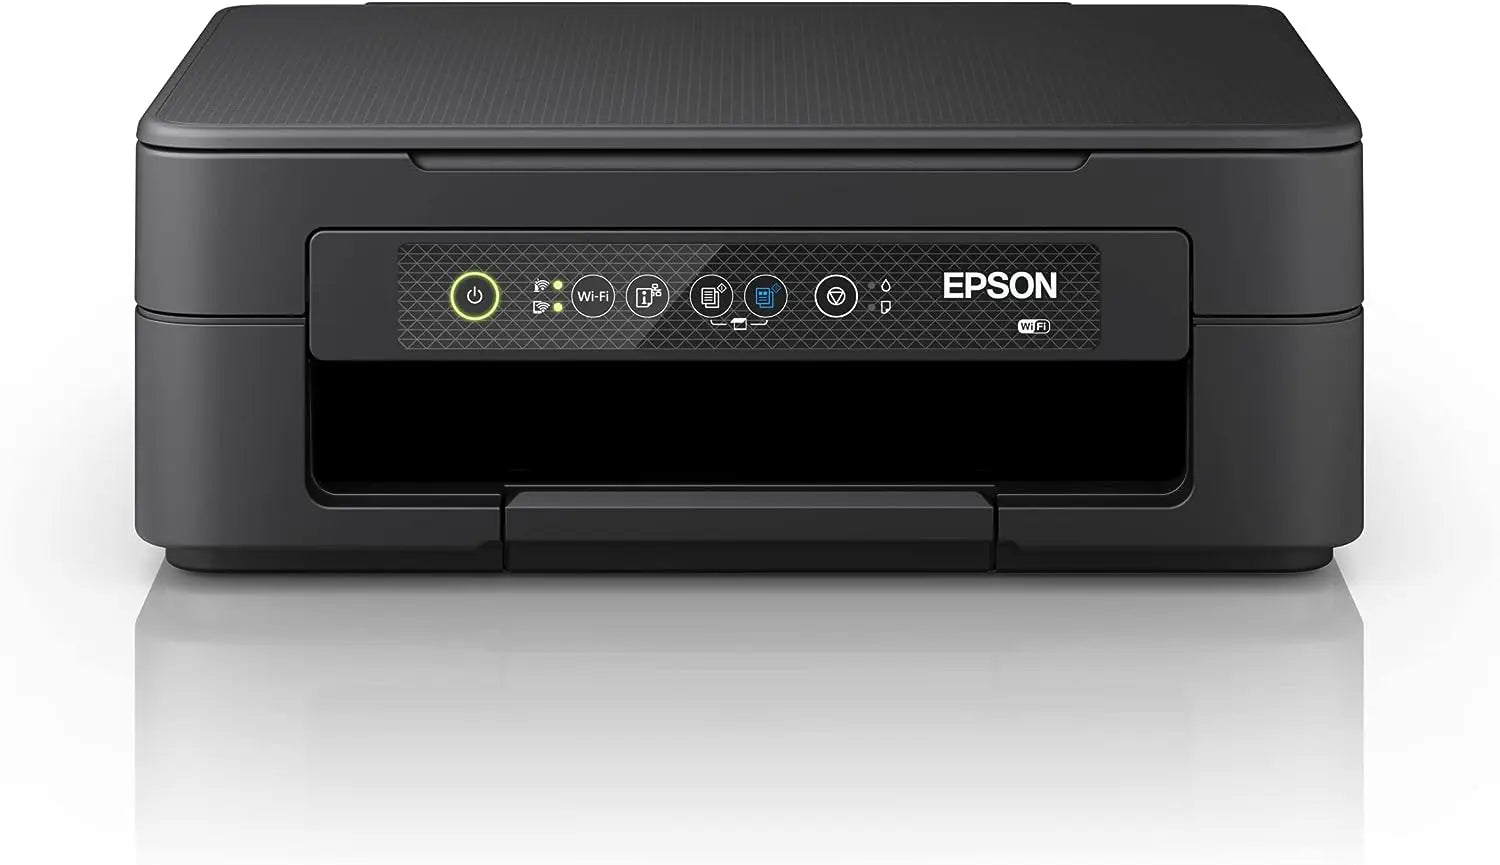 Epson Imprimante Expression Home XP-2200, Multifonction 3-en-1 : Scanner/Copieur, A4, Jet d'encre Couleur, WiFi Direct, Cartouches séparées, Ultra-Compact Souqqy